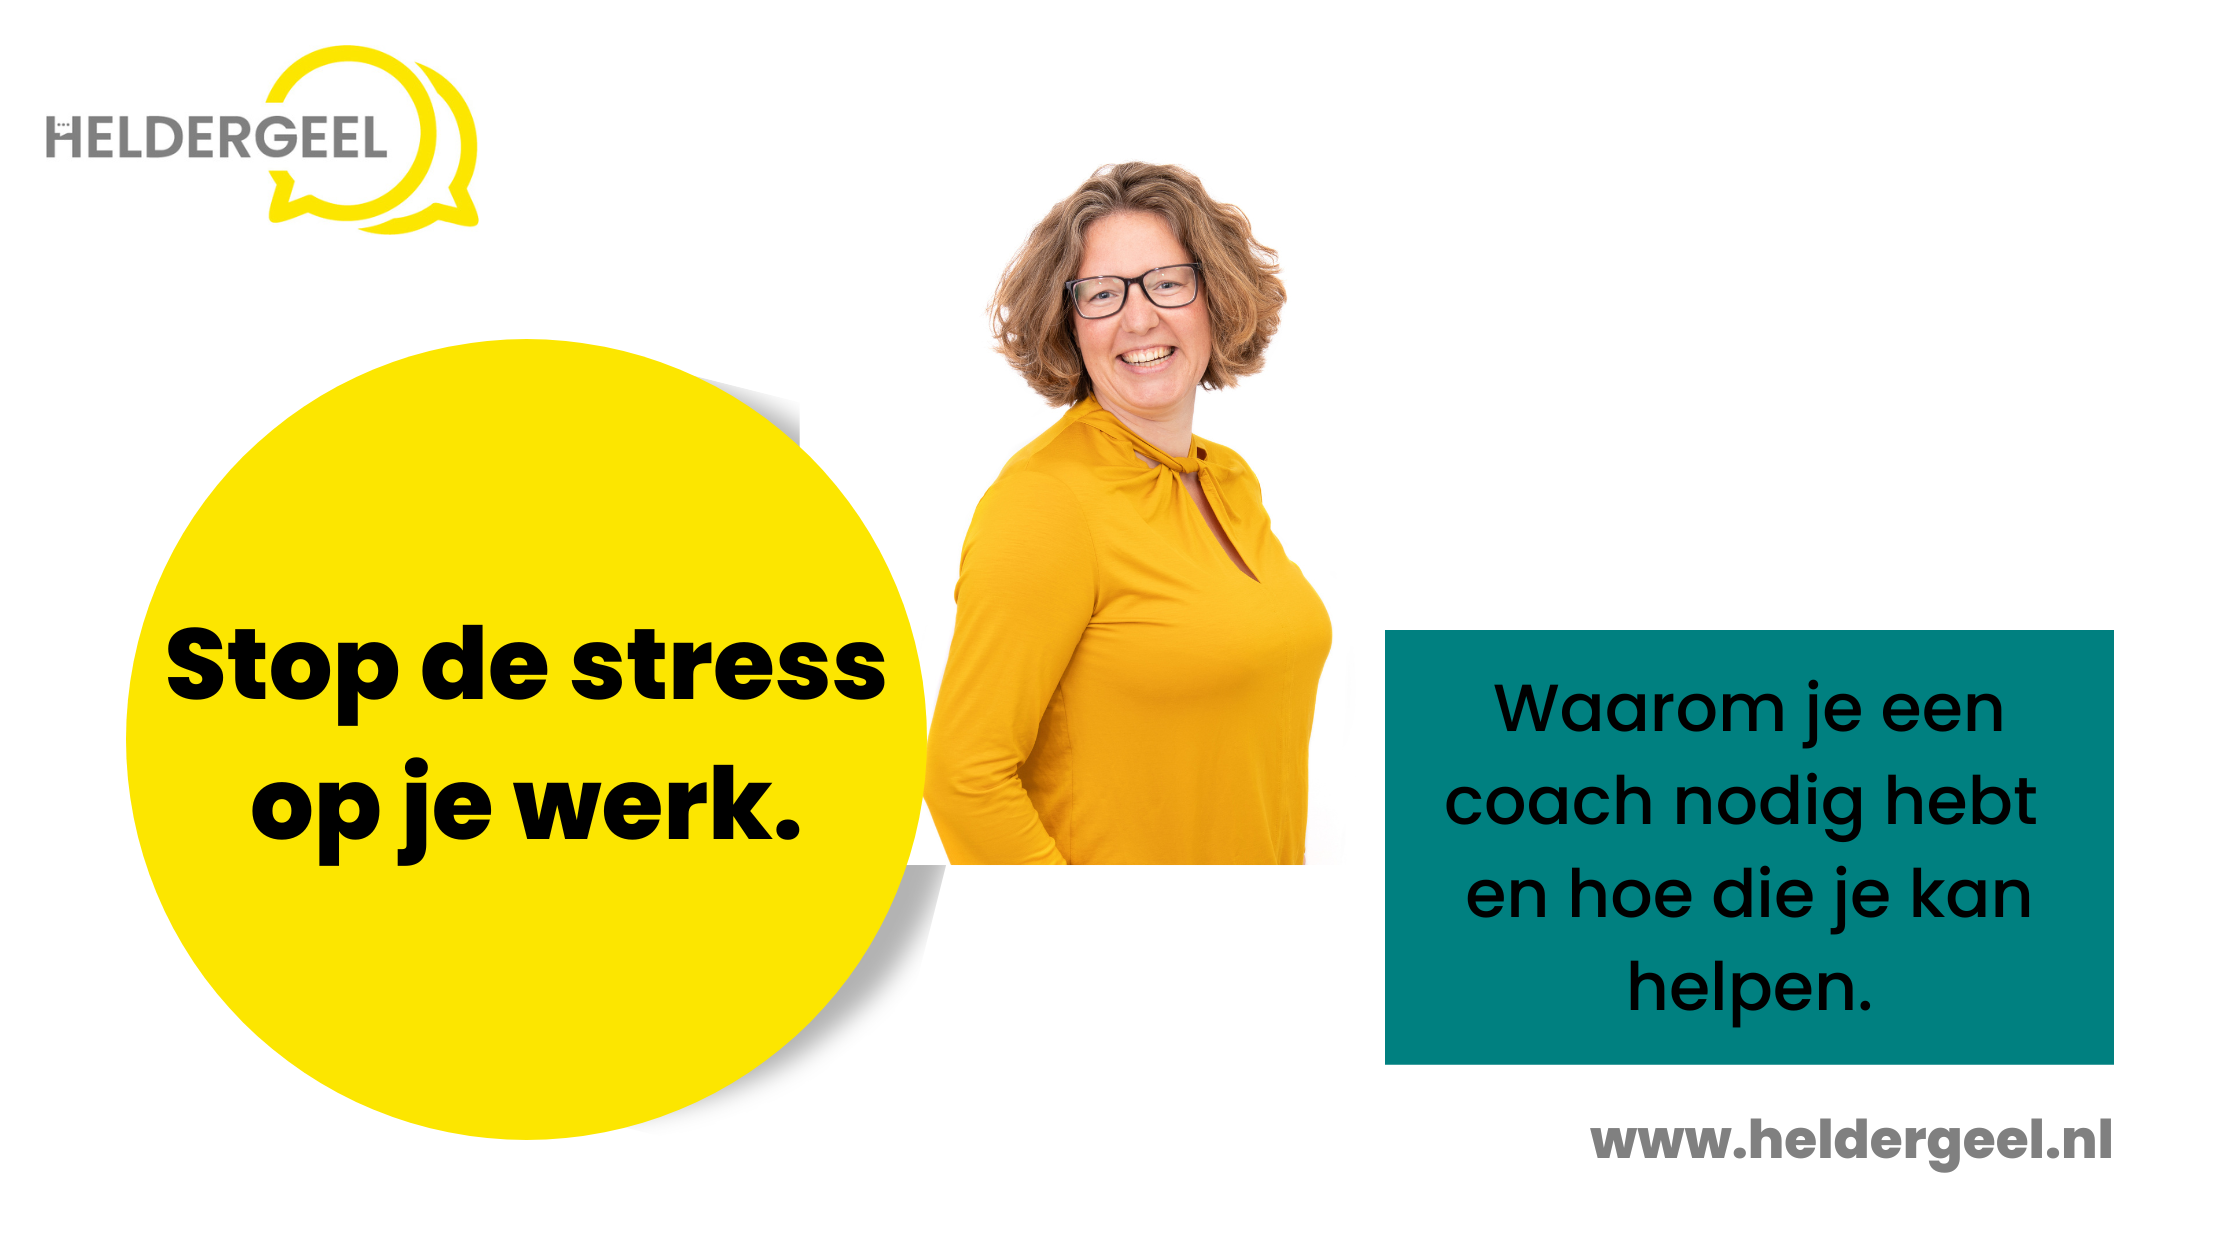 Blog over waarom je met stress een coach nodig hebt